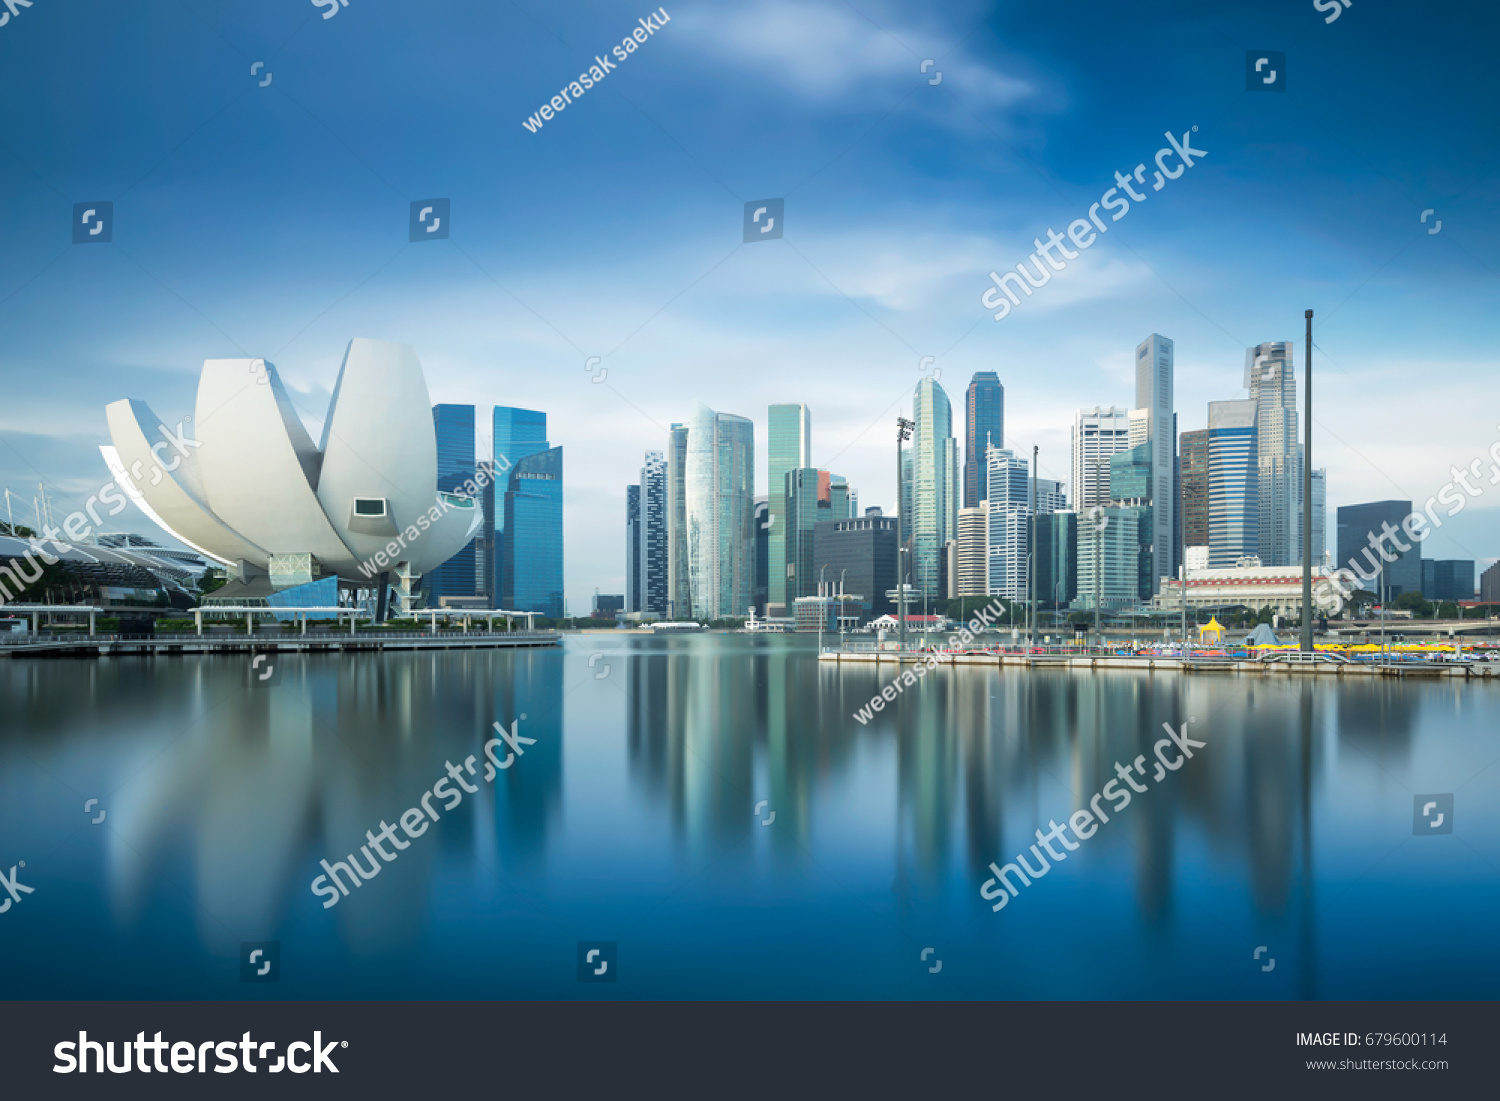 Singapore skyline #679600114